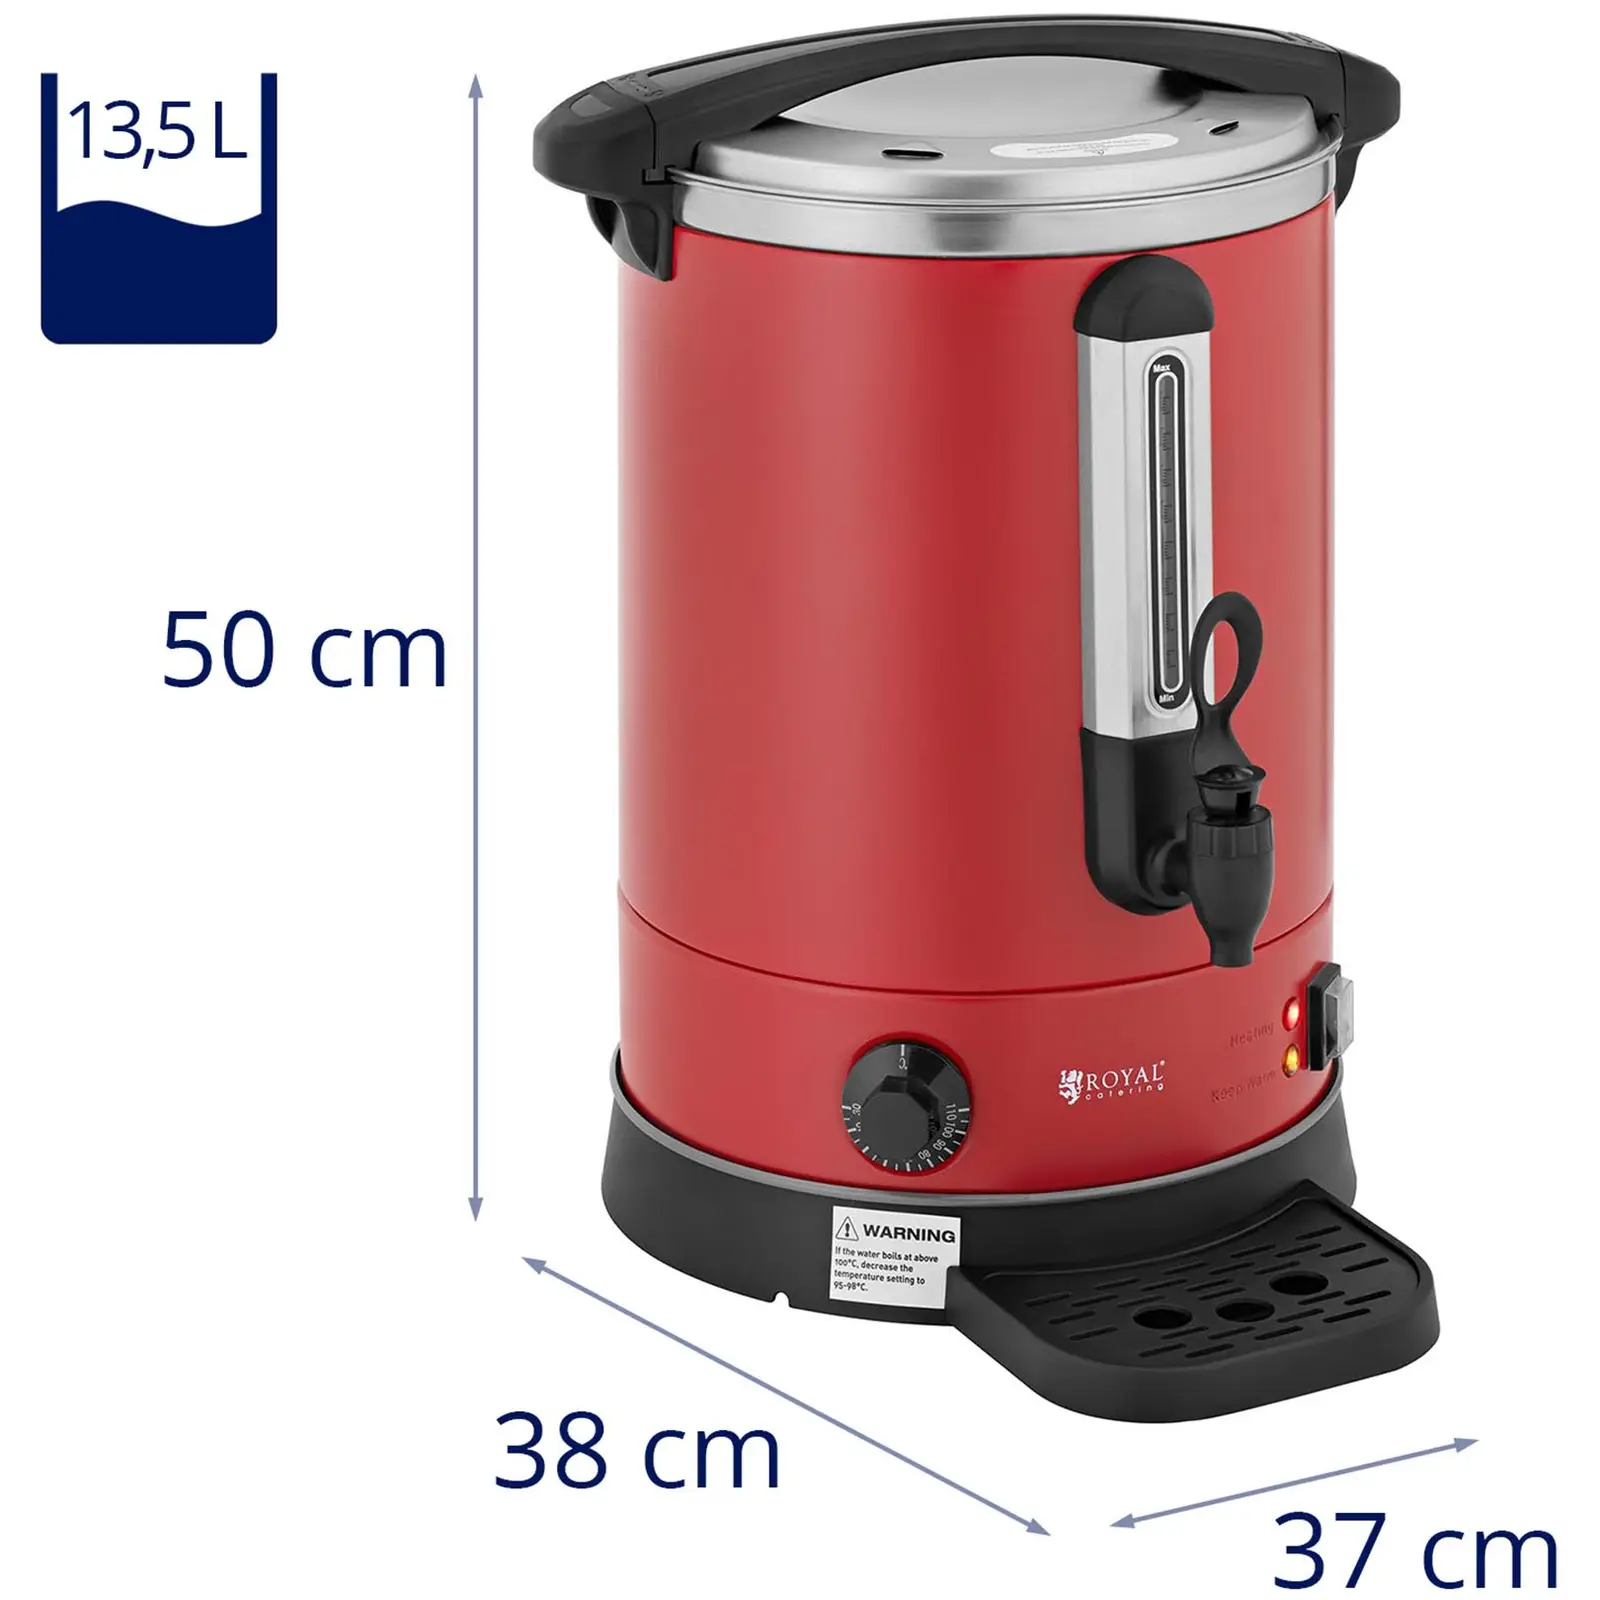 Wasserkocher - 13.5 L - 2500 W - Rot